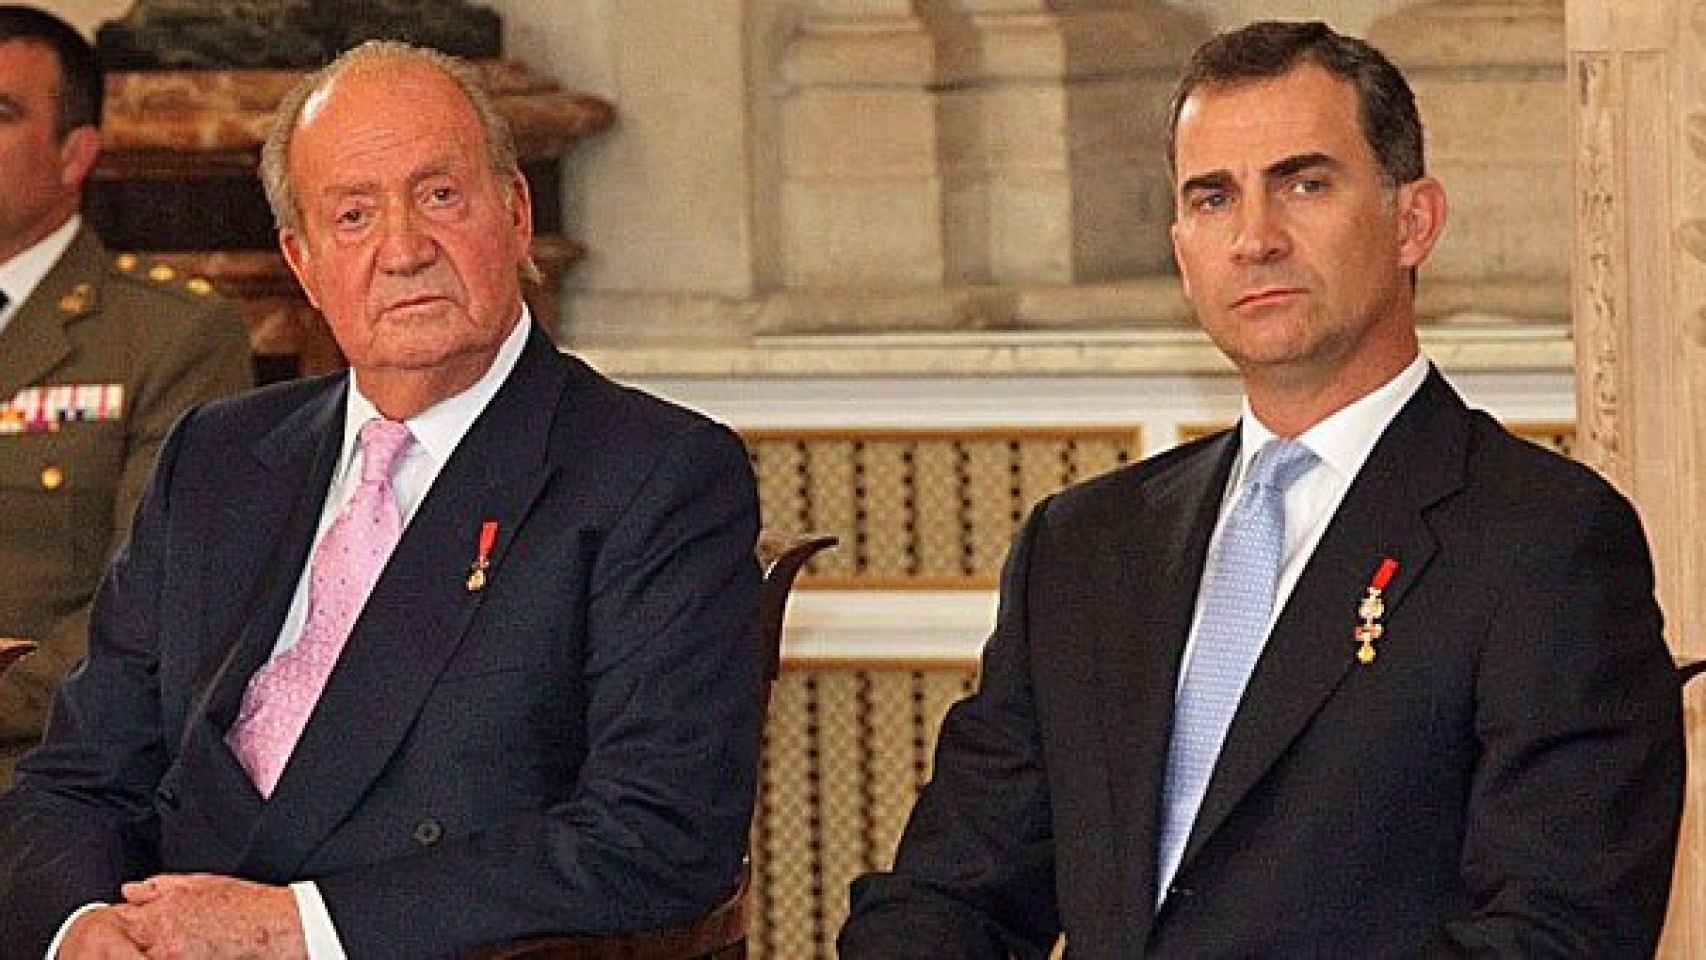 Los Reyes Juan Carlos I y Felipe VI, este miércoles, durante el acto de sanción de la ley de abdicación del primero